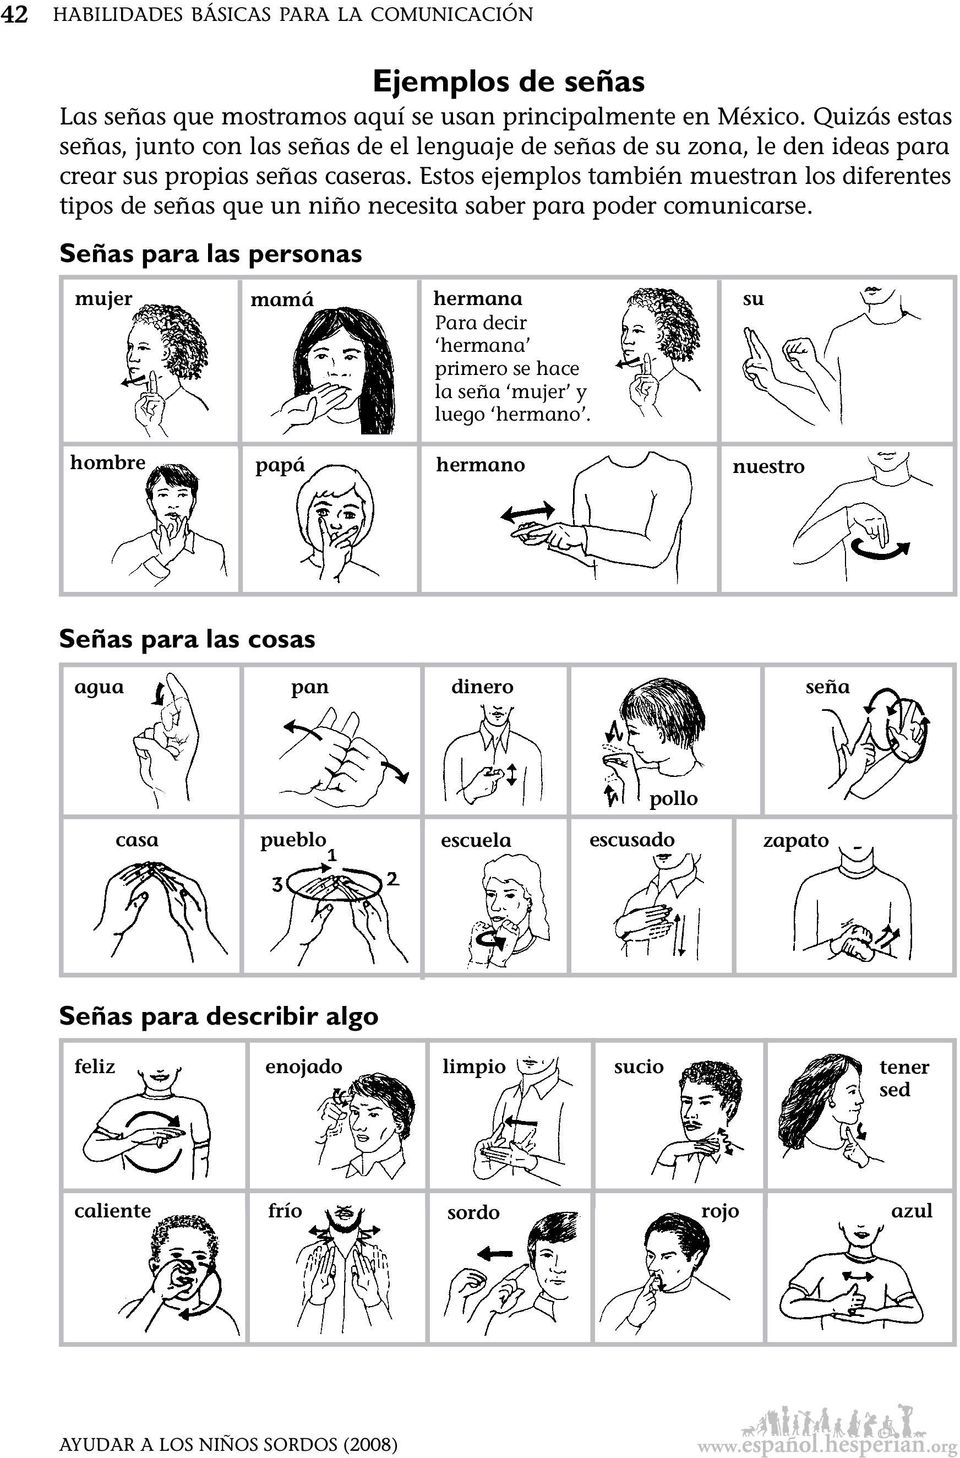 Estos ejemplos también muestran los diferentes tipos de señas que un niño necesita saber para poder comunicarse.